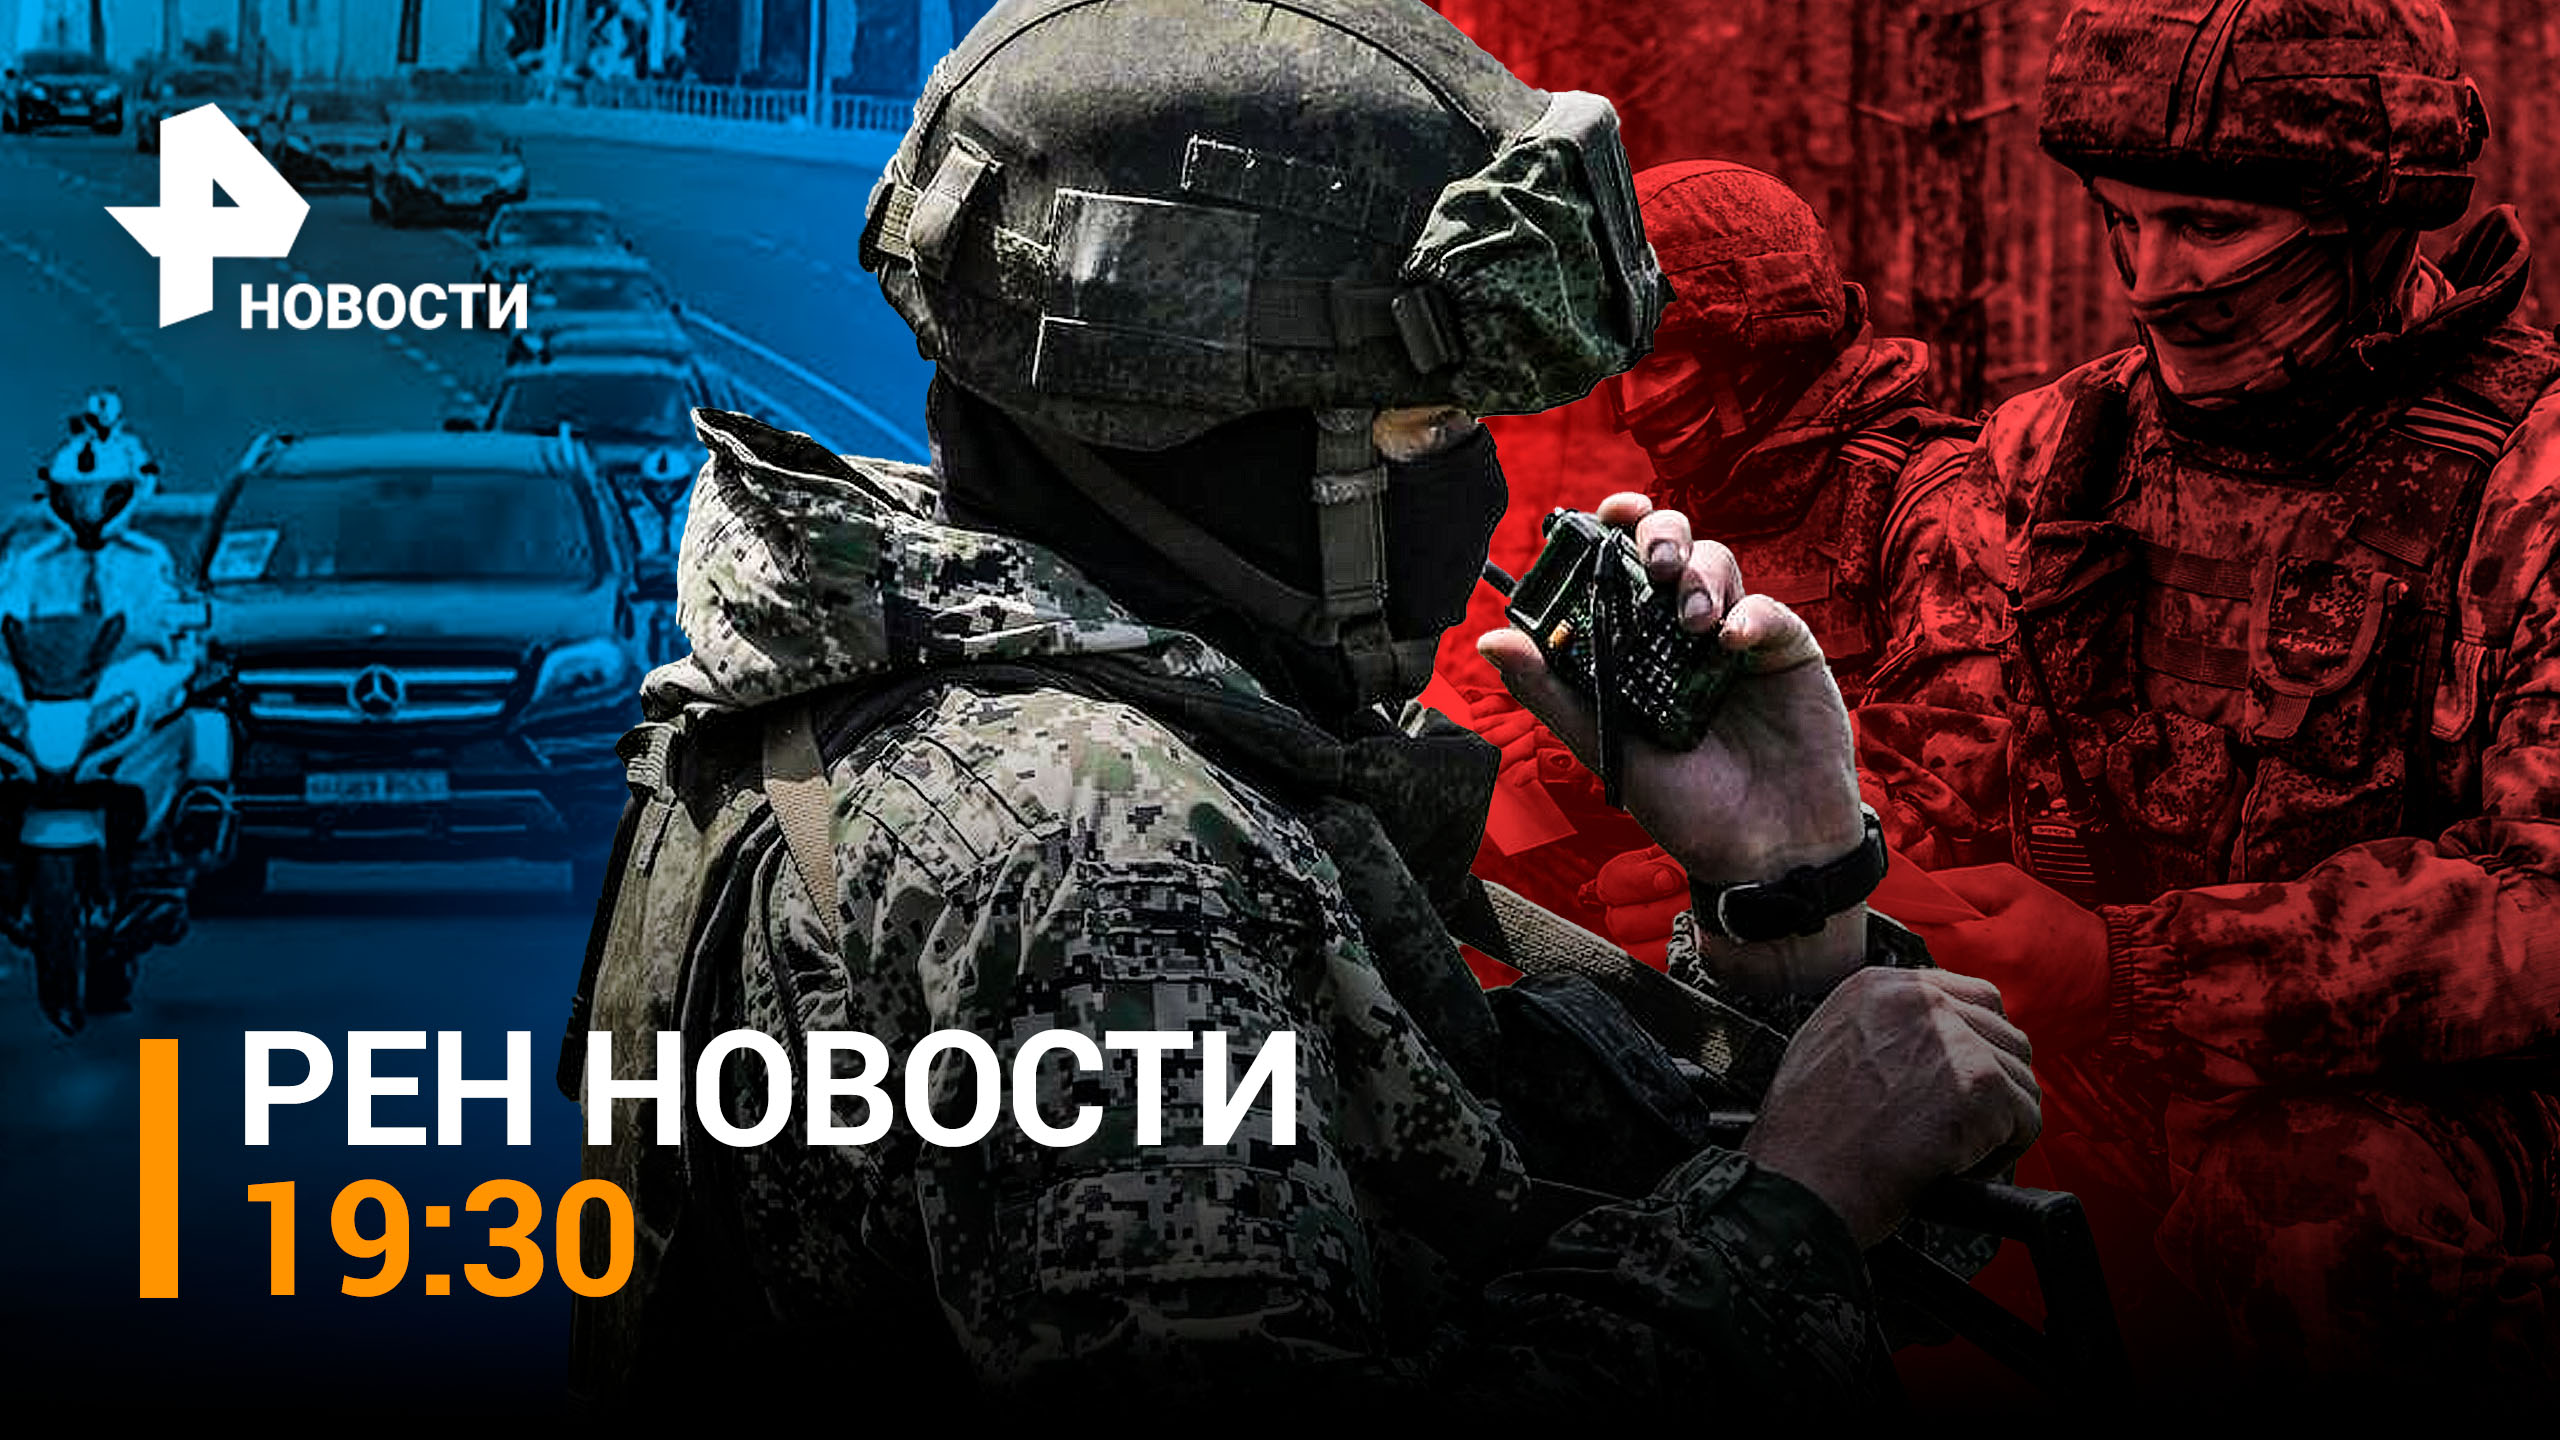 Путин уверен, что западные службы помогают украинцам организовать теракты / РЕН НОВОСТИ 19:30